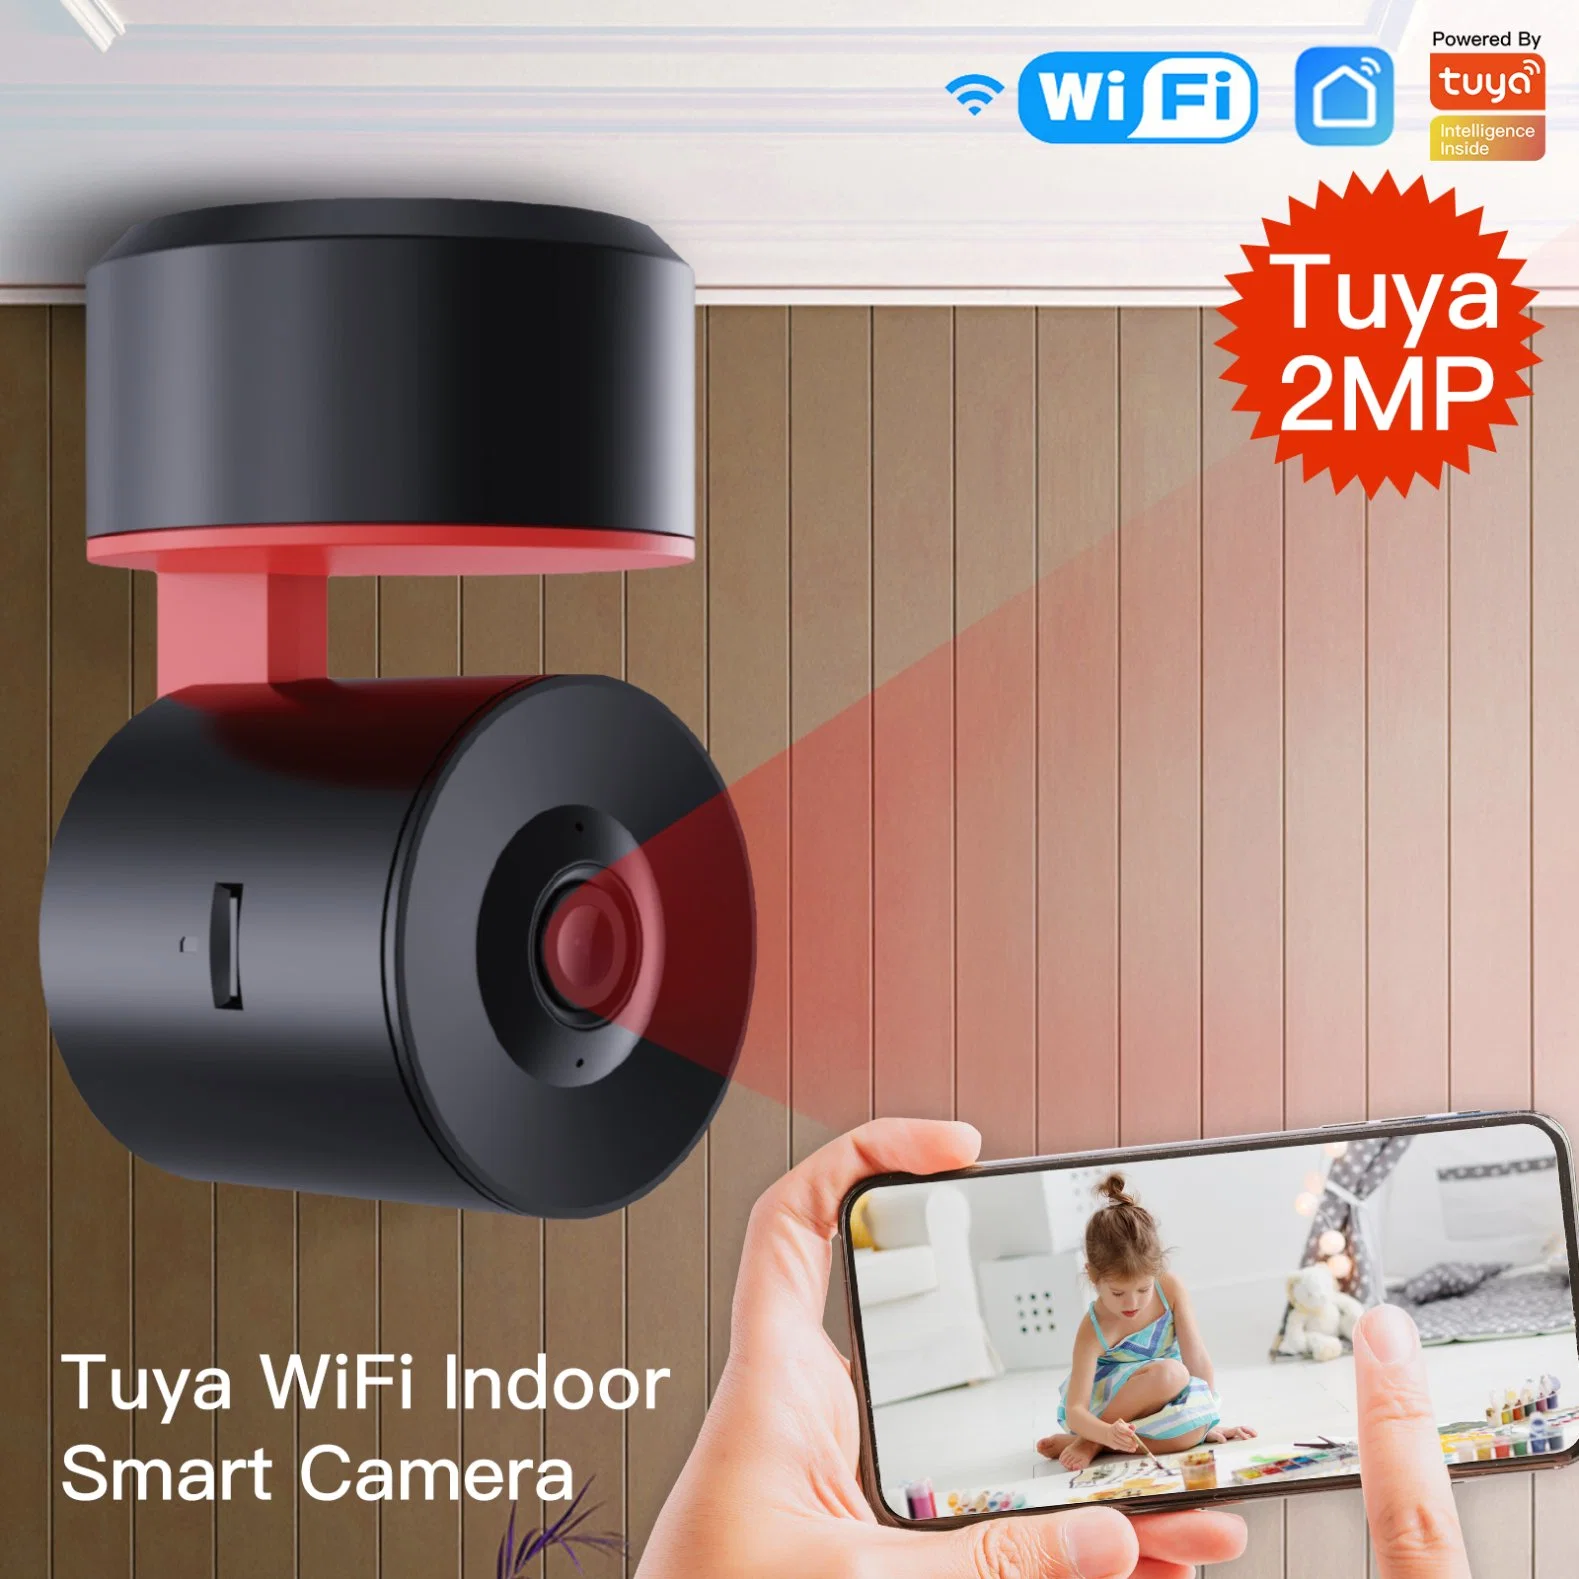 IP-камера Tuya PTZ для установки внутри помещений, Smart Automatic Tracking 1080P Беспроводная камера безопасности AI Human Detection для домашнего видеонаблюдения в двух направлениях Аудио и облачное хранилище